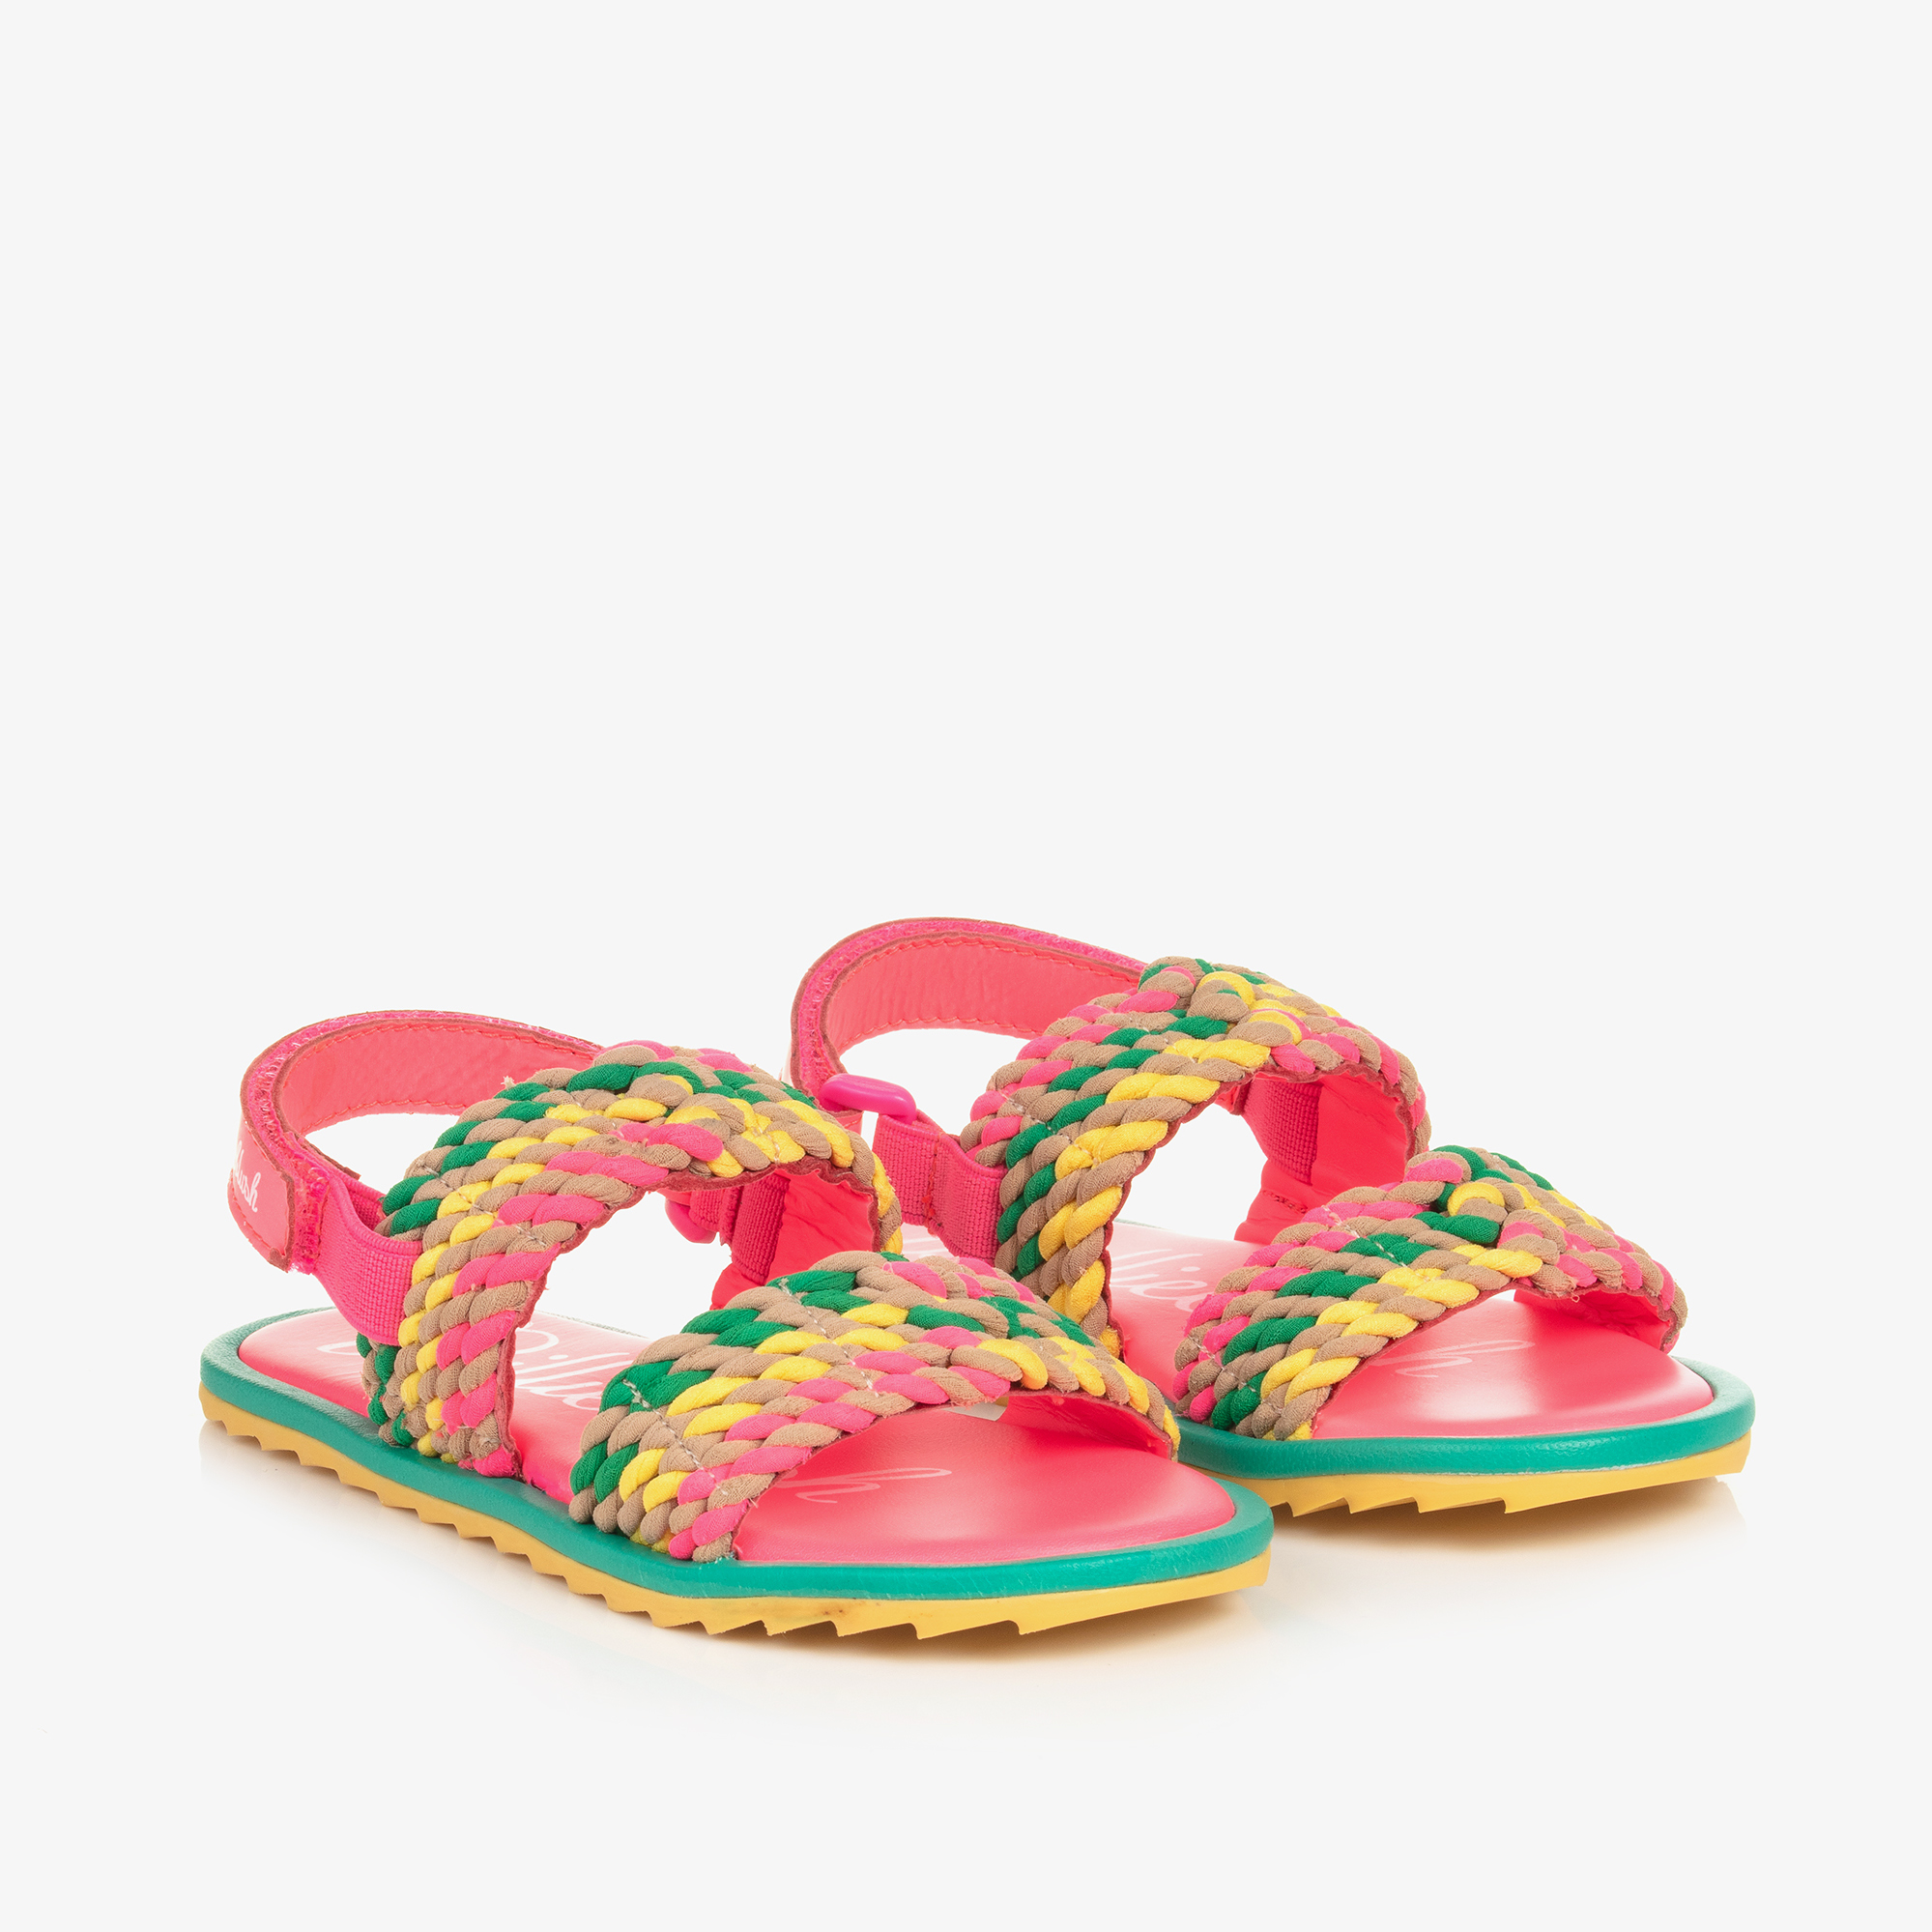 Billieblush - Girls Pink Leather Butterfly Sandals | Childrensalon